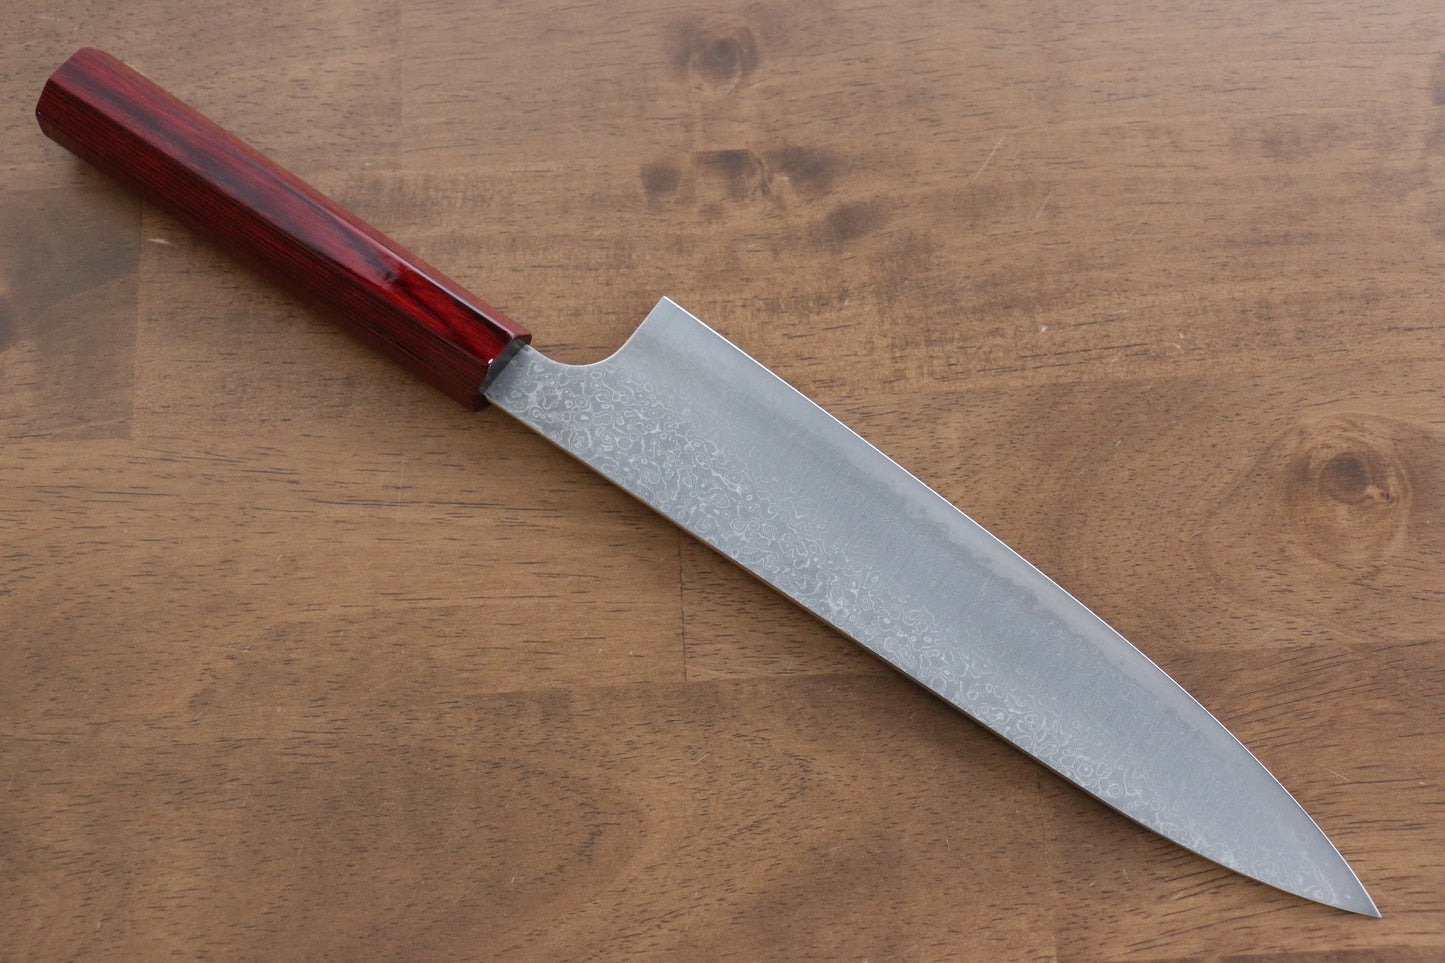 Marke Kei Kobayashi R2/SG2 Damaststahl Mehrzweckmesser Gyuto Japanisches Messer 210 mm rot lackierter Griff